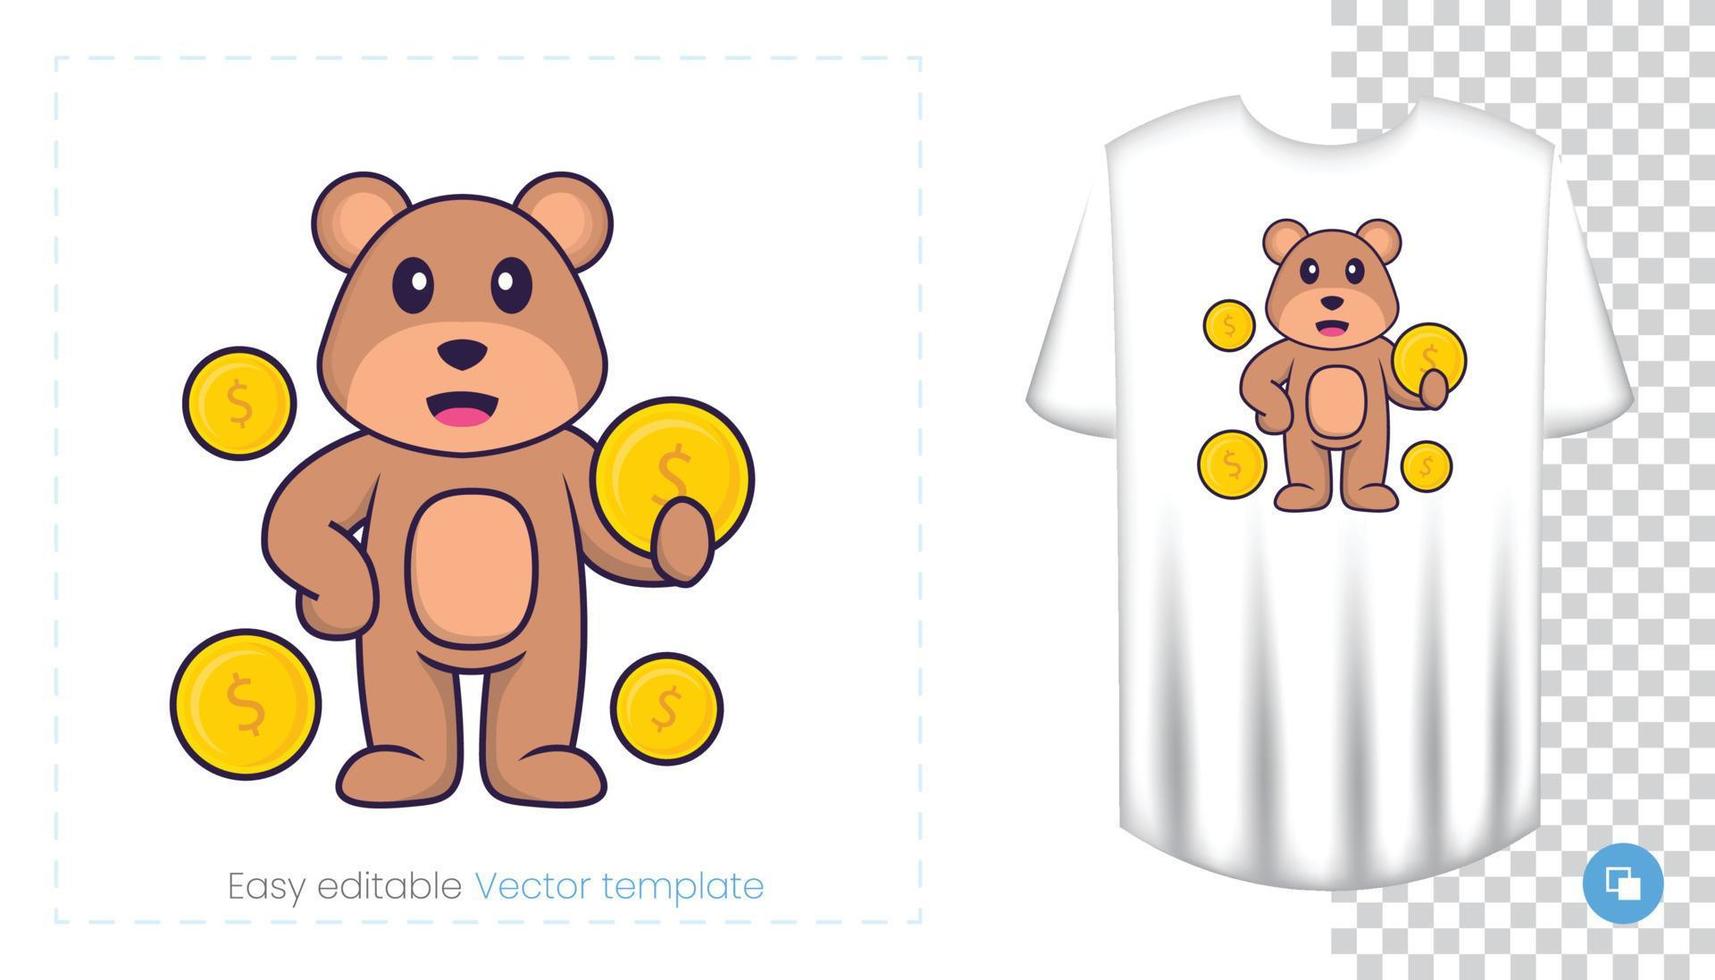 personagem do mascote do urso bonito. pode ser usado para adesivos, padrões, patches, têxteis, papel. ilustração vetorial vetor